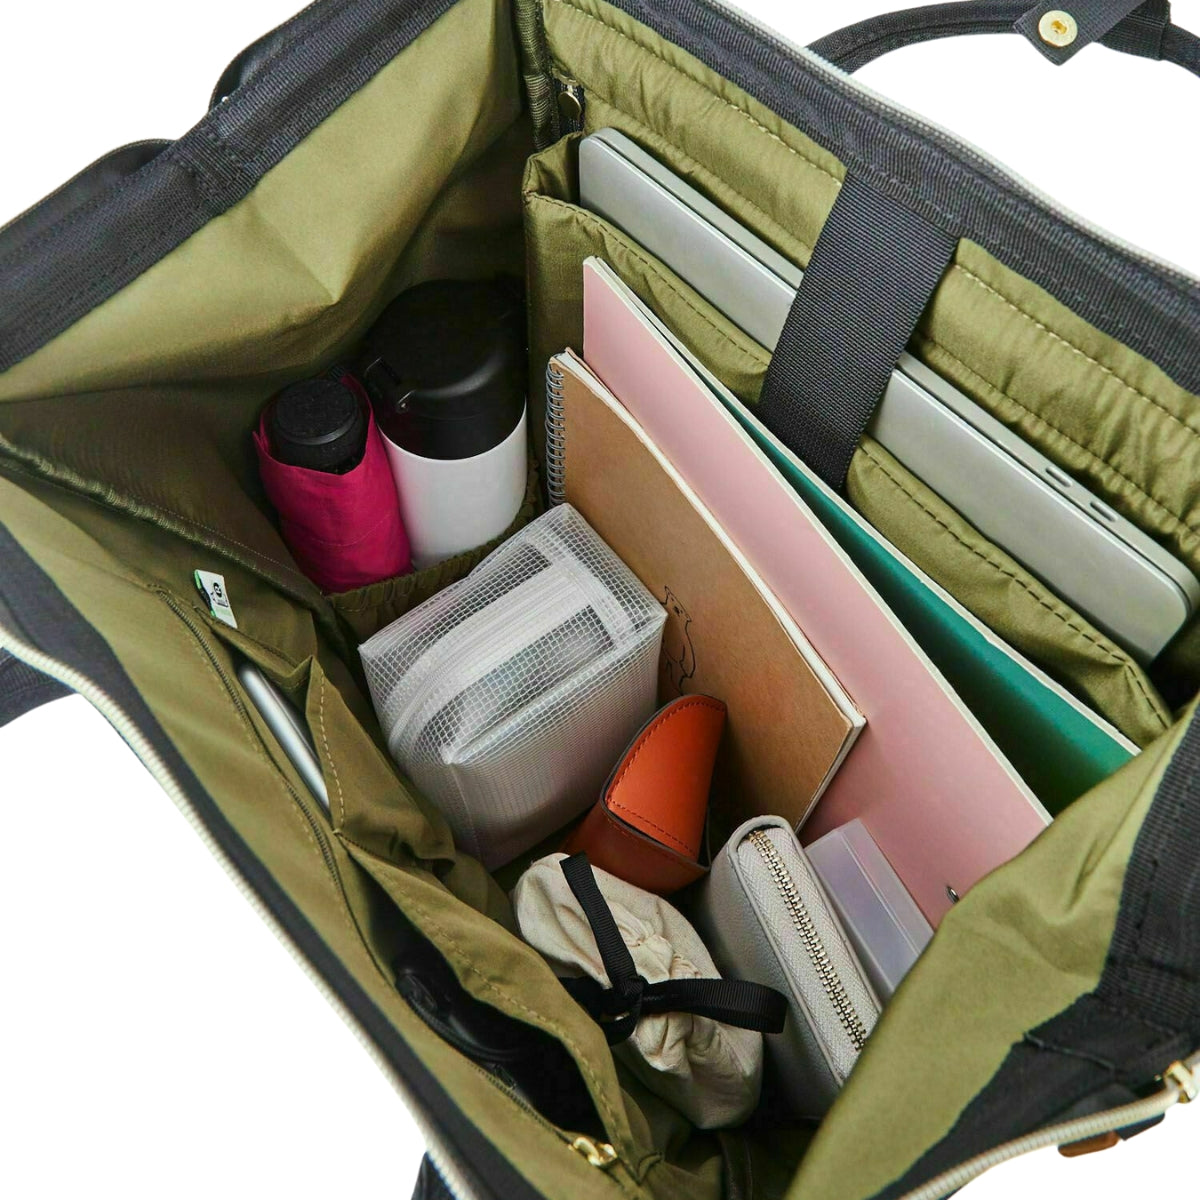 Anello Cross Bottle Backpack Large – Te Koop